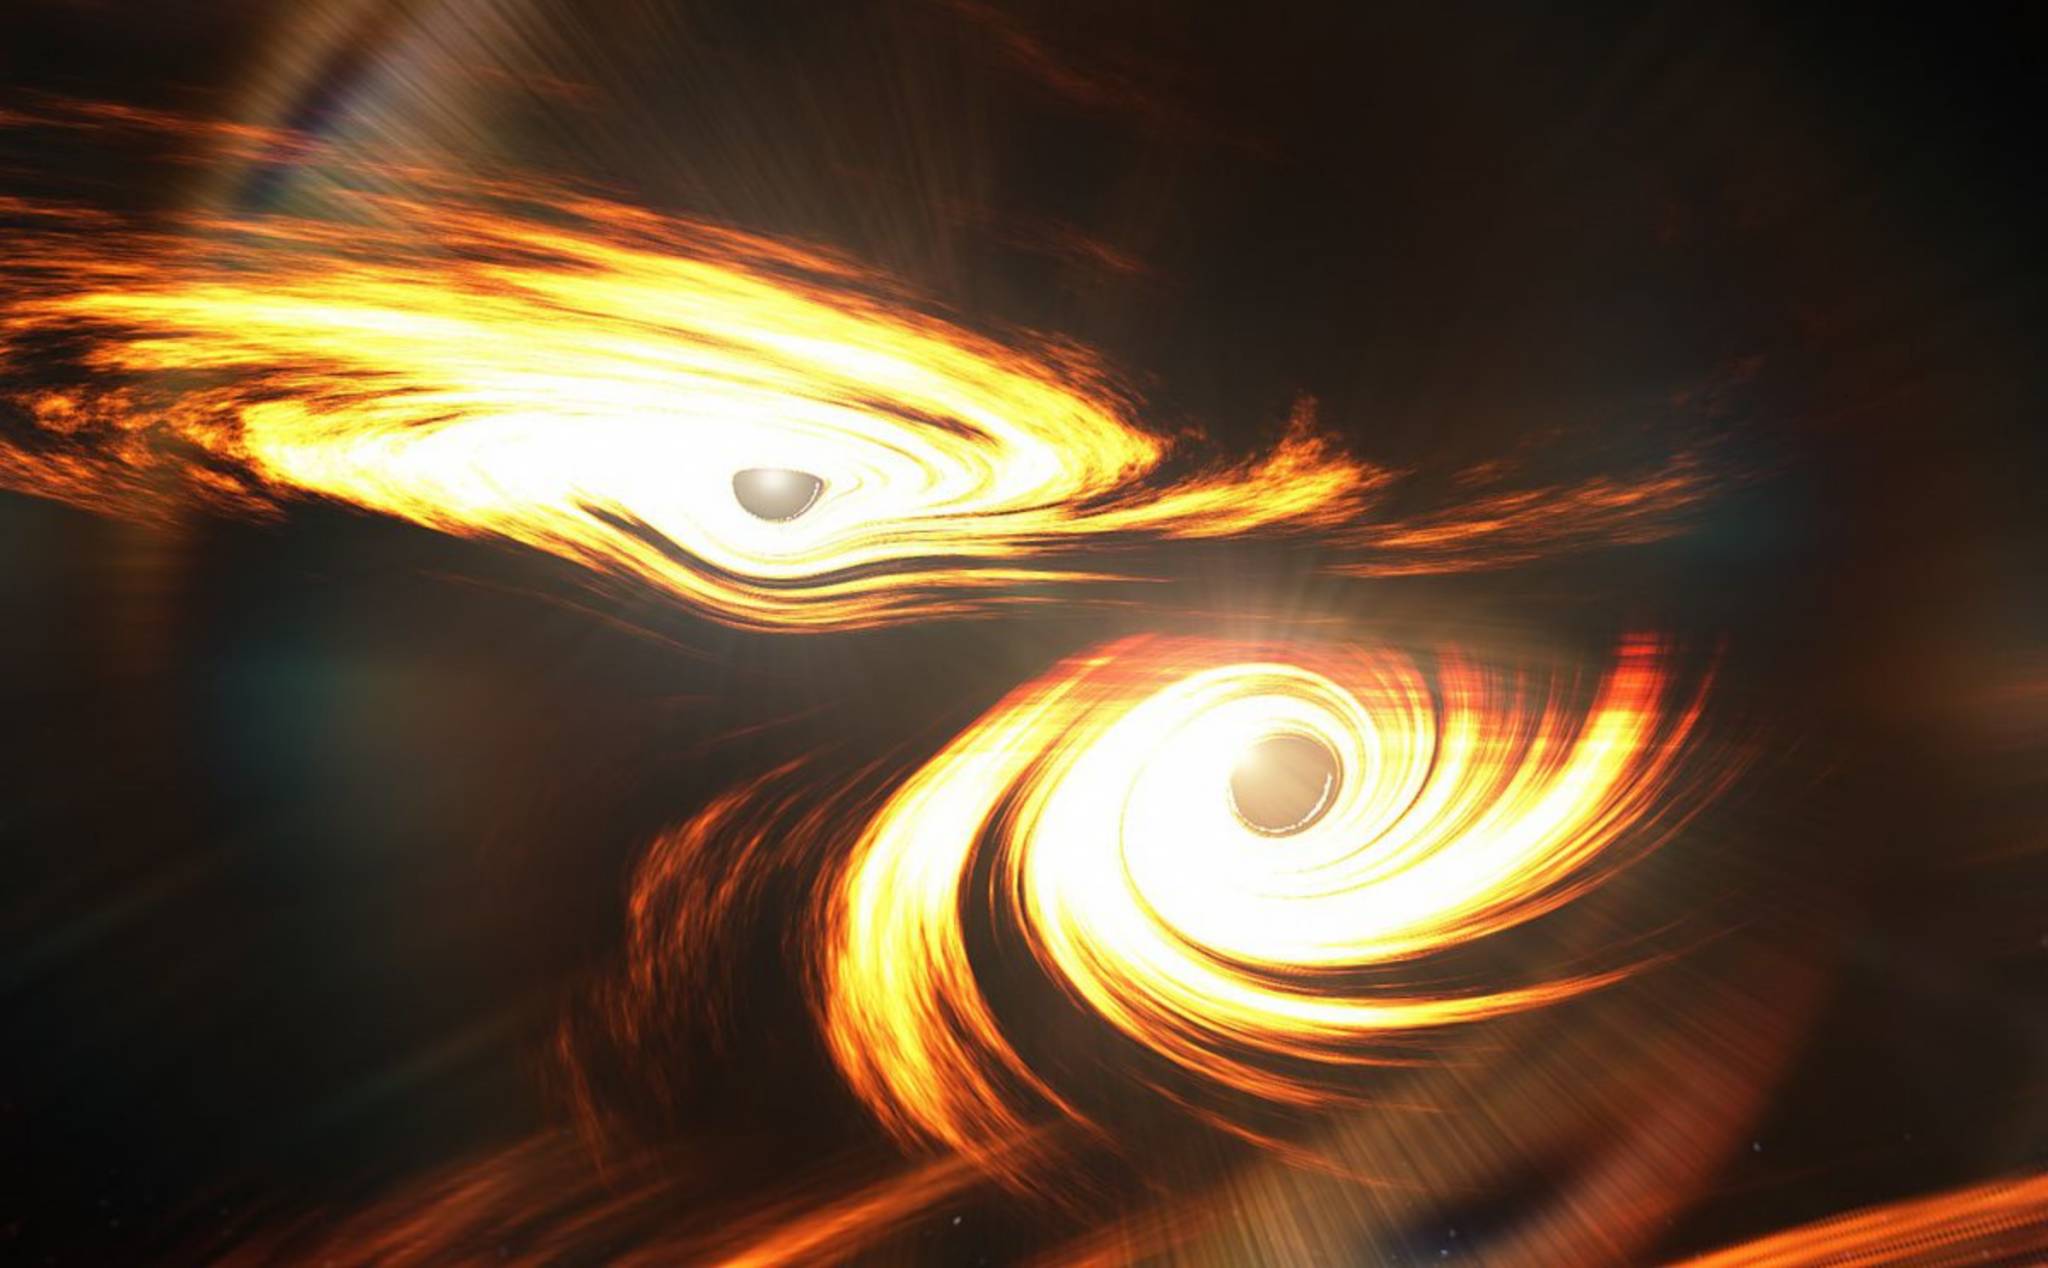 Hố đen - Là một trong những hiện tượng kỳ diệu nhất của vũ trụ, hố đen luôn là cảm hứng to lớn cho những người yêu khoa học và vũ trụ học. Hãy xem hình ảnh hố đen để khám phá bí ẩn tuyệt vời này.